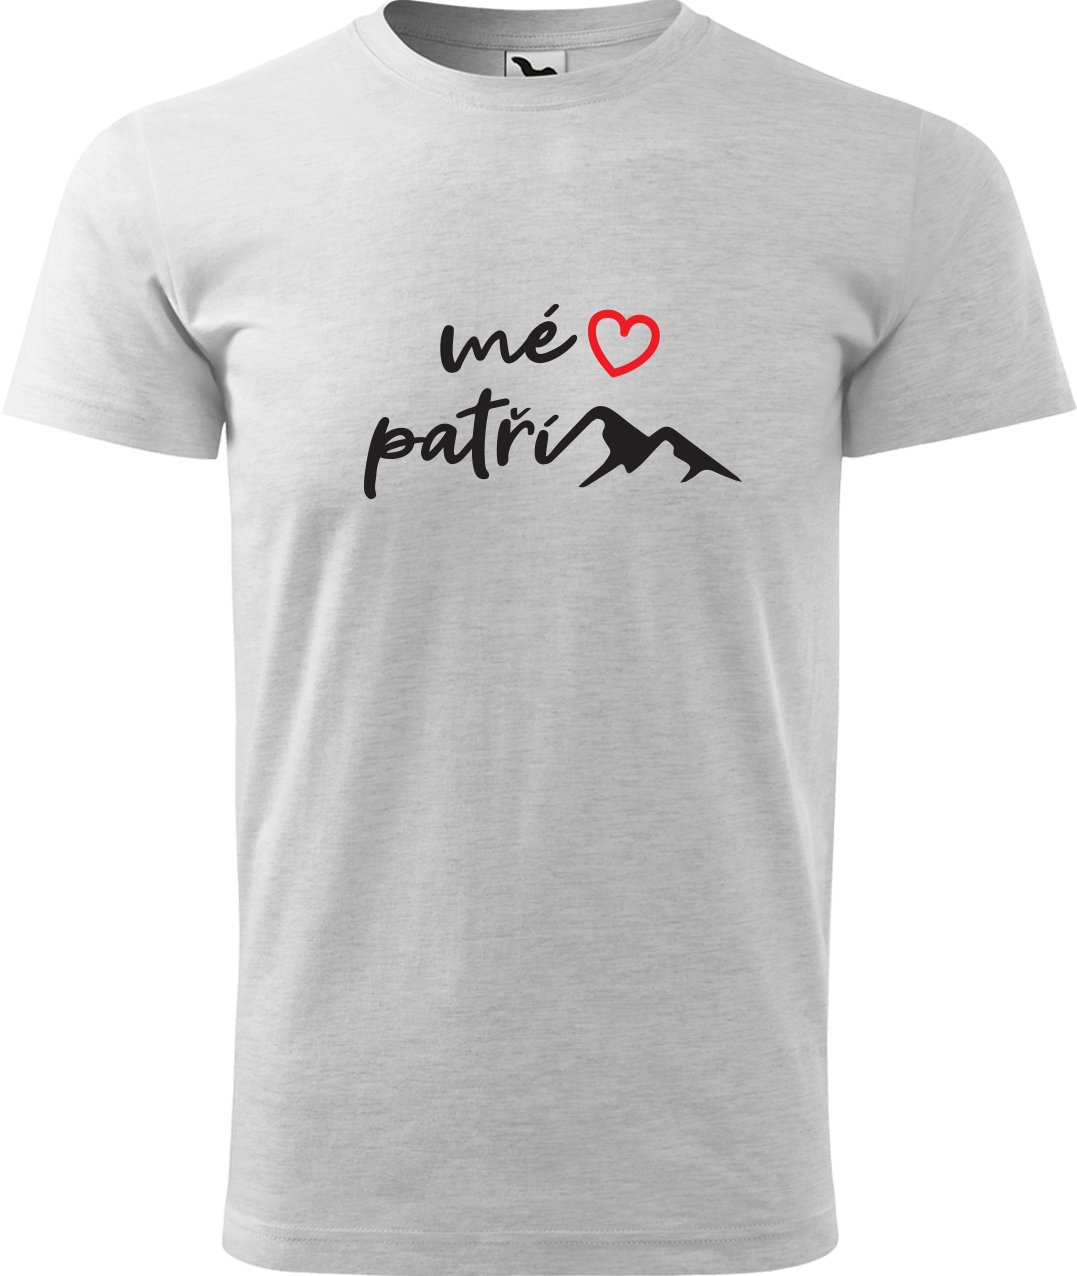 Pánské tričko na hory - Mé srdce patří horám Velikost: L, Barva: Světle šedý melír (03), Střih: pánský